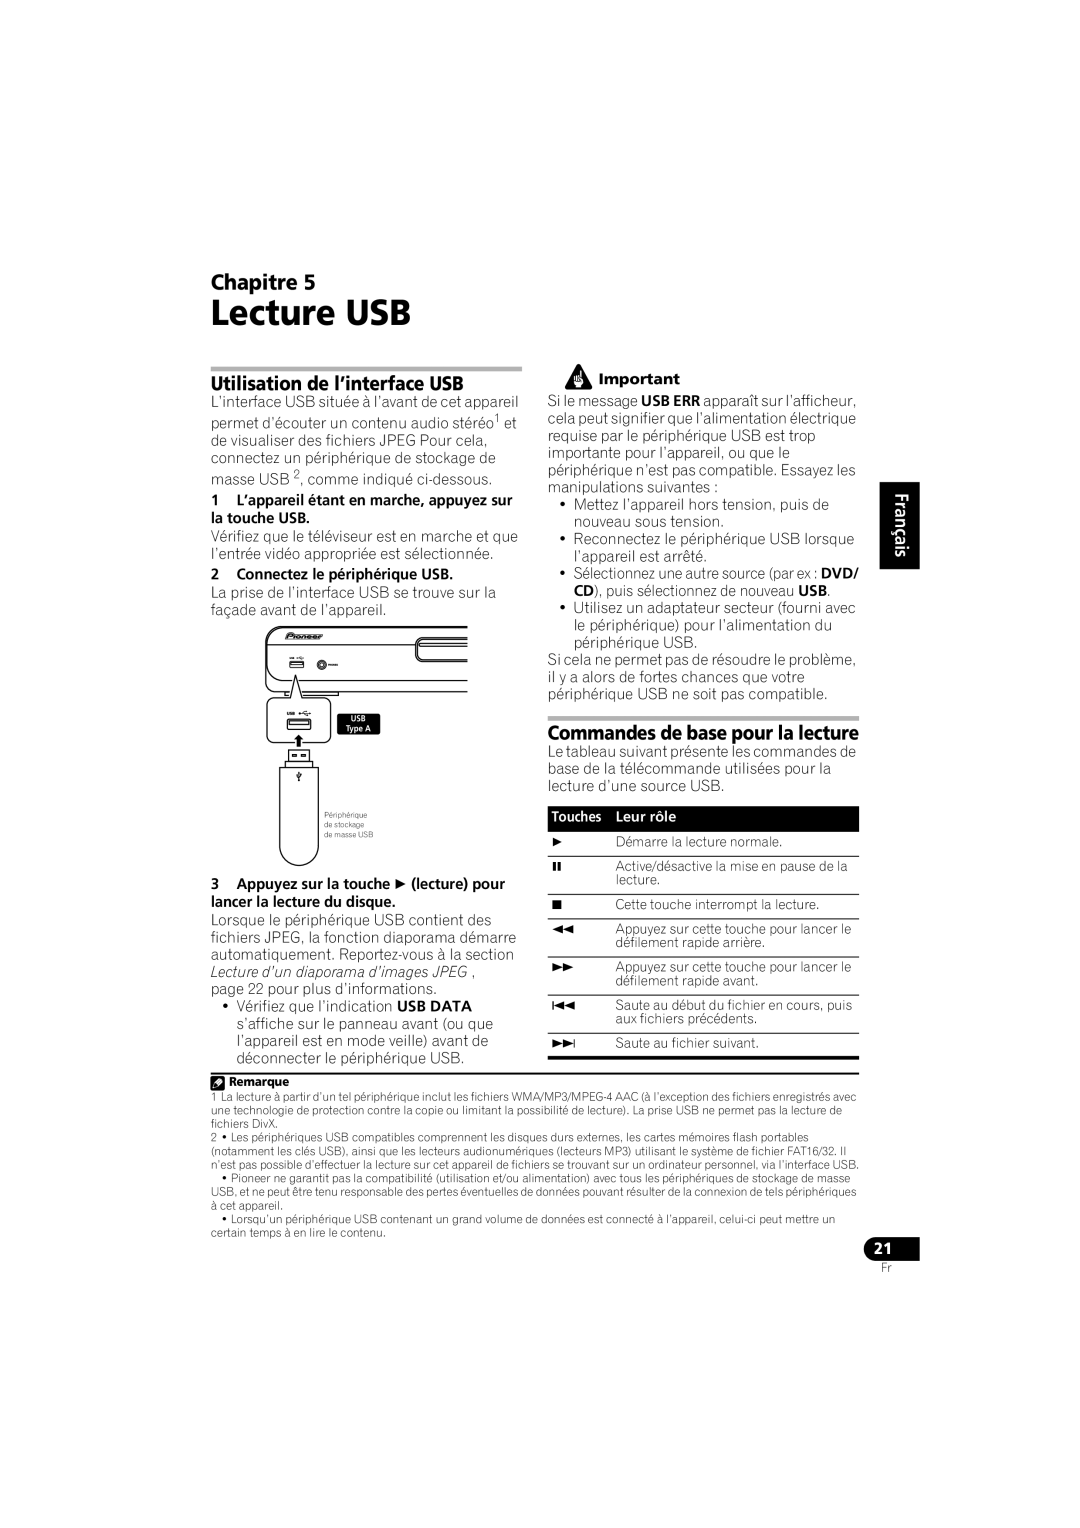 Pioneer HTZ-360DV manual Lecture USB, Utilisation de l’interface USB, Commandes de base pour la lecture, Chapitre 